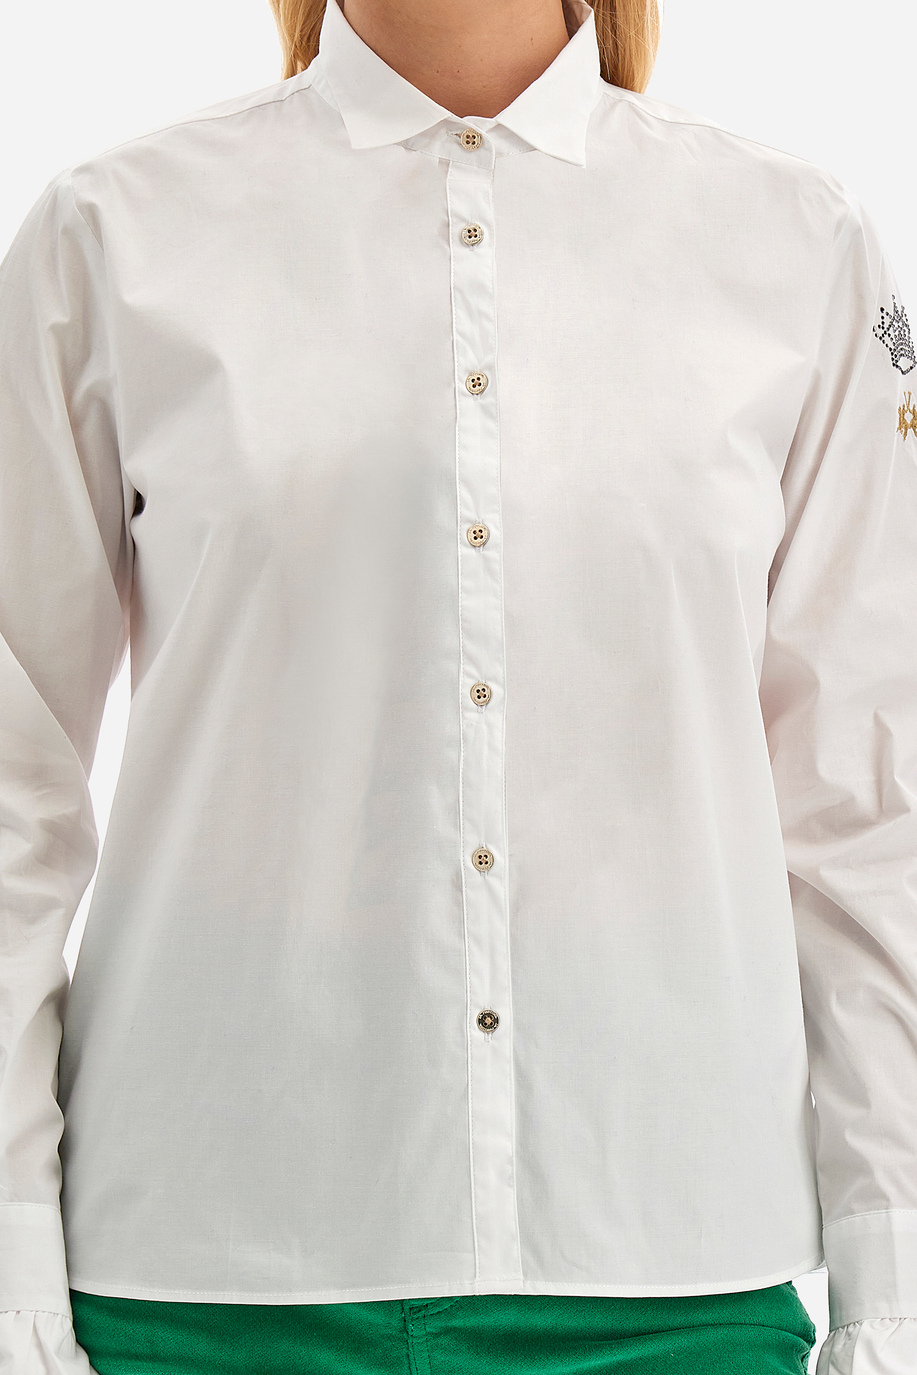 Damen -Hemd regular fit - Welbie - Hemden | La Martina - Official Online Shop